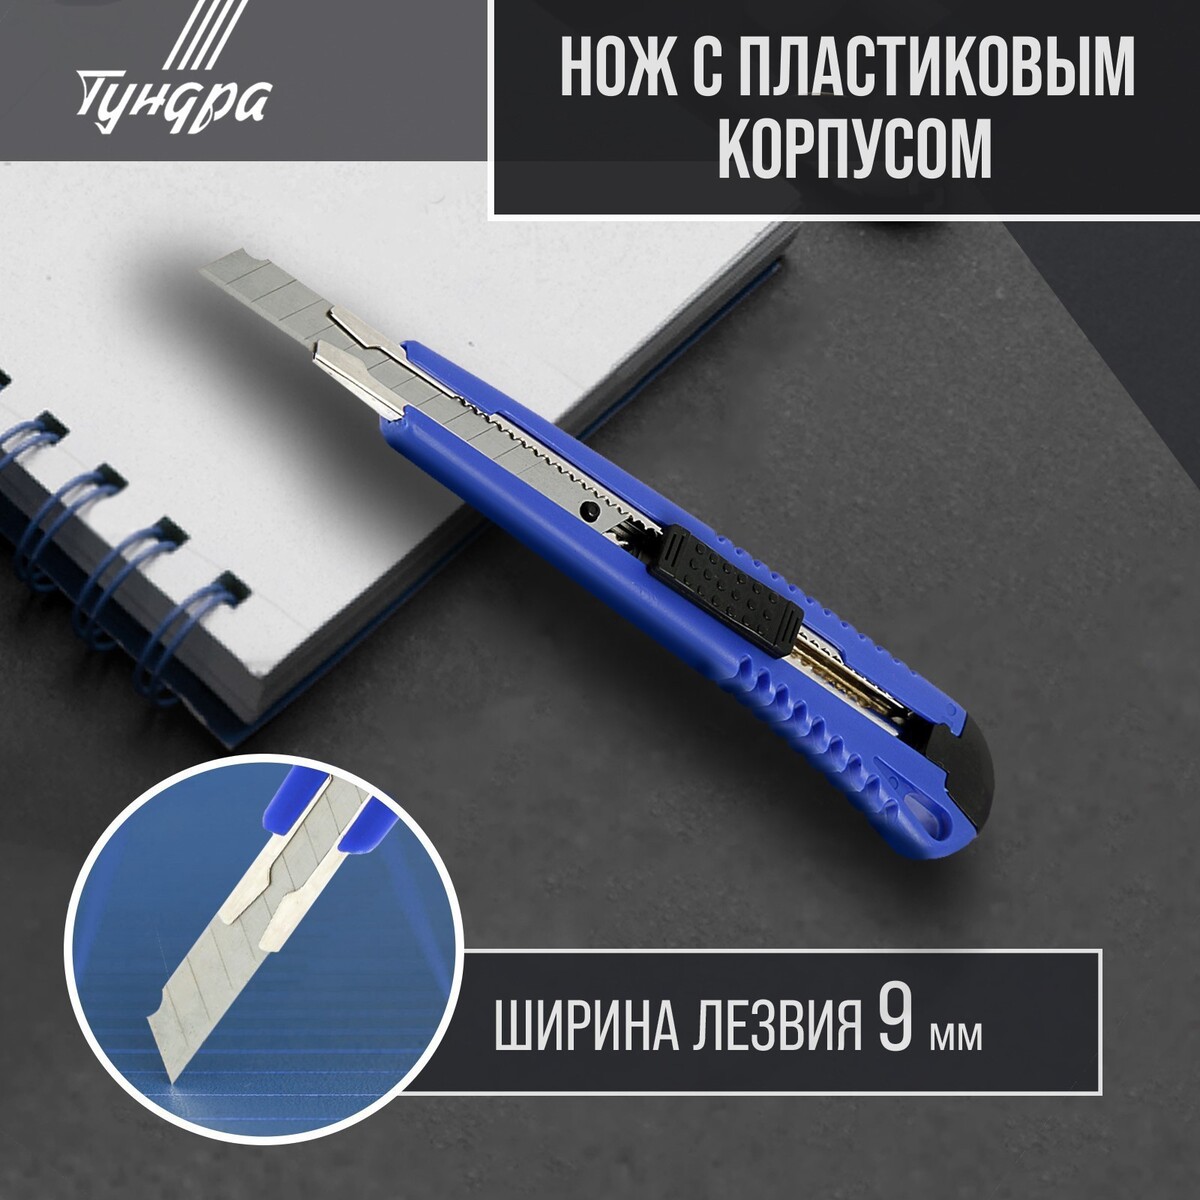 Нож универсальный тундра, пластиковый корпус, металлическая направляющая, 9 мм нож универсальный тундра металлическая направляющая 2к корпус 18 мм